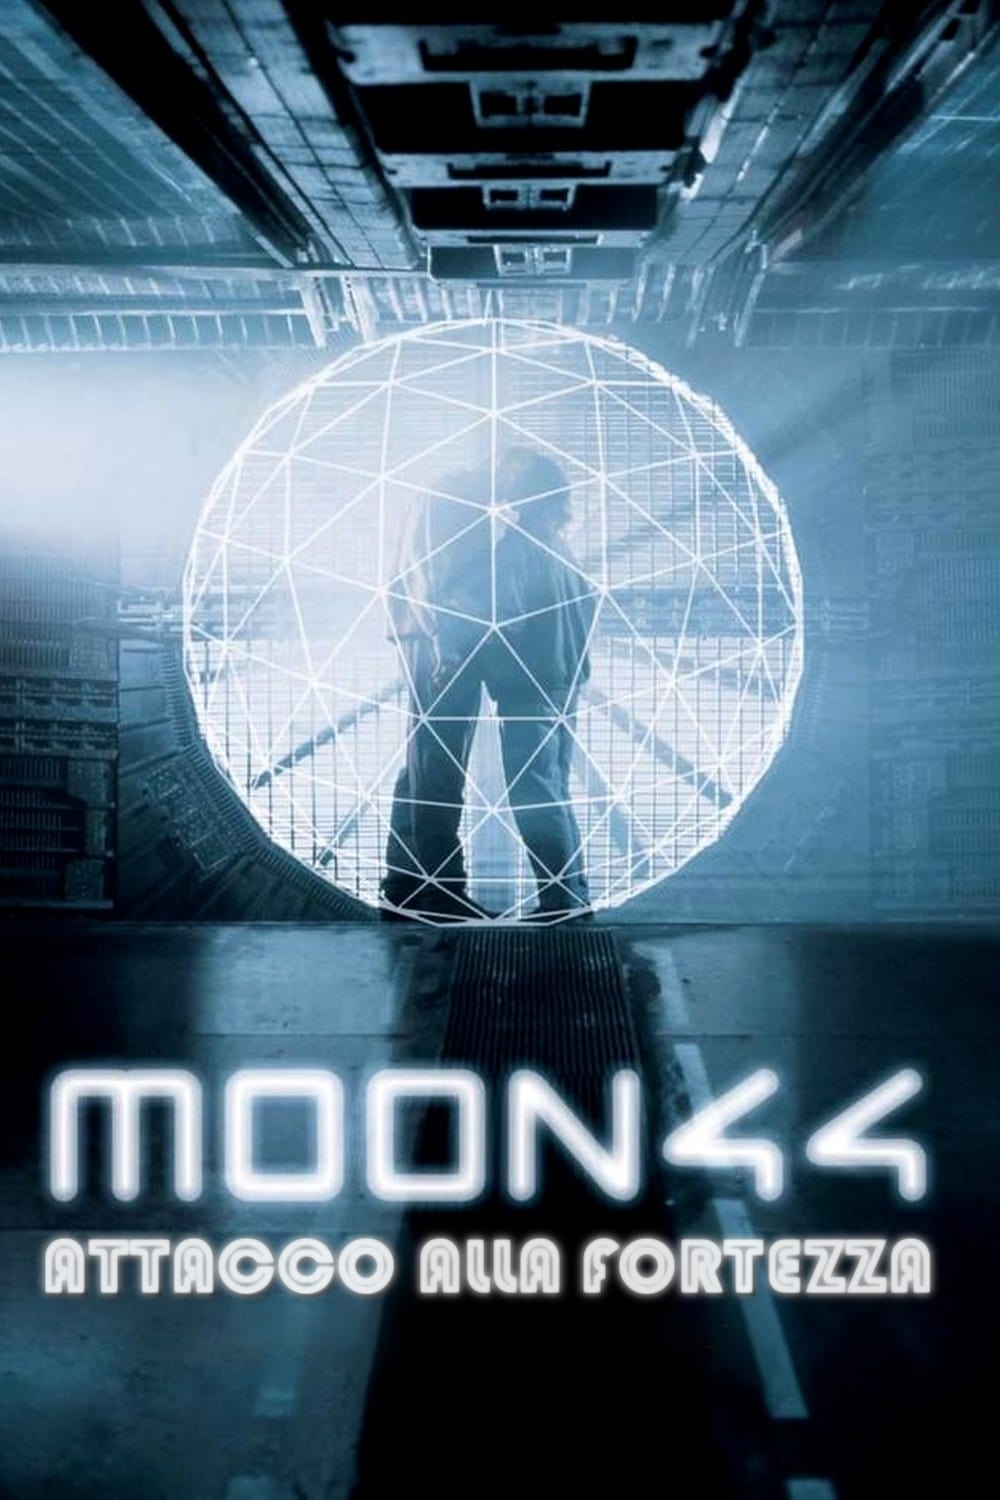 Moon 44 – Attacco alla fortezza (1990)